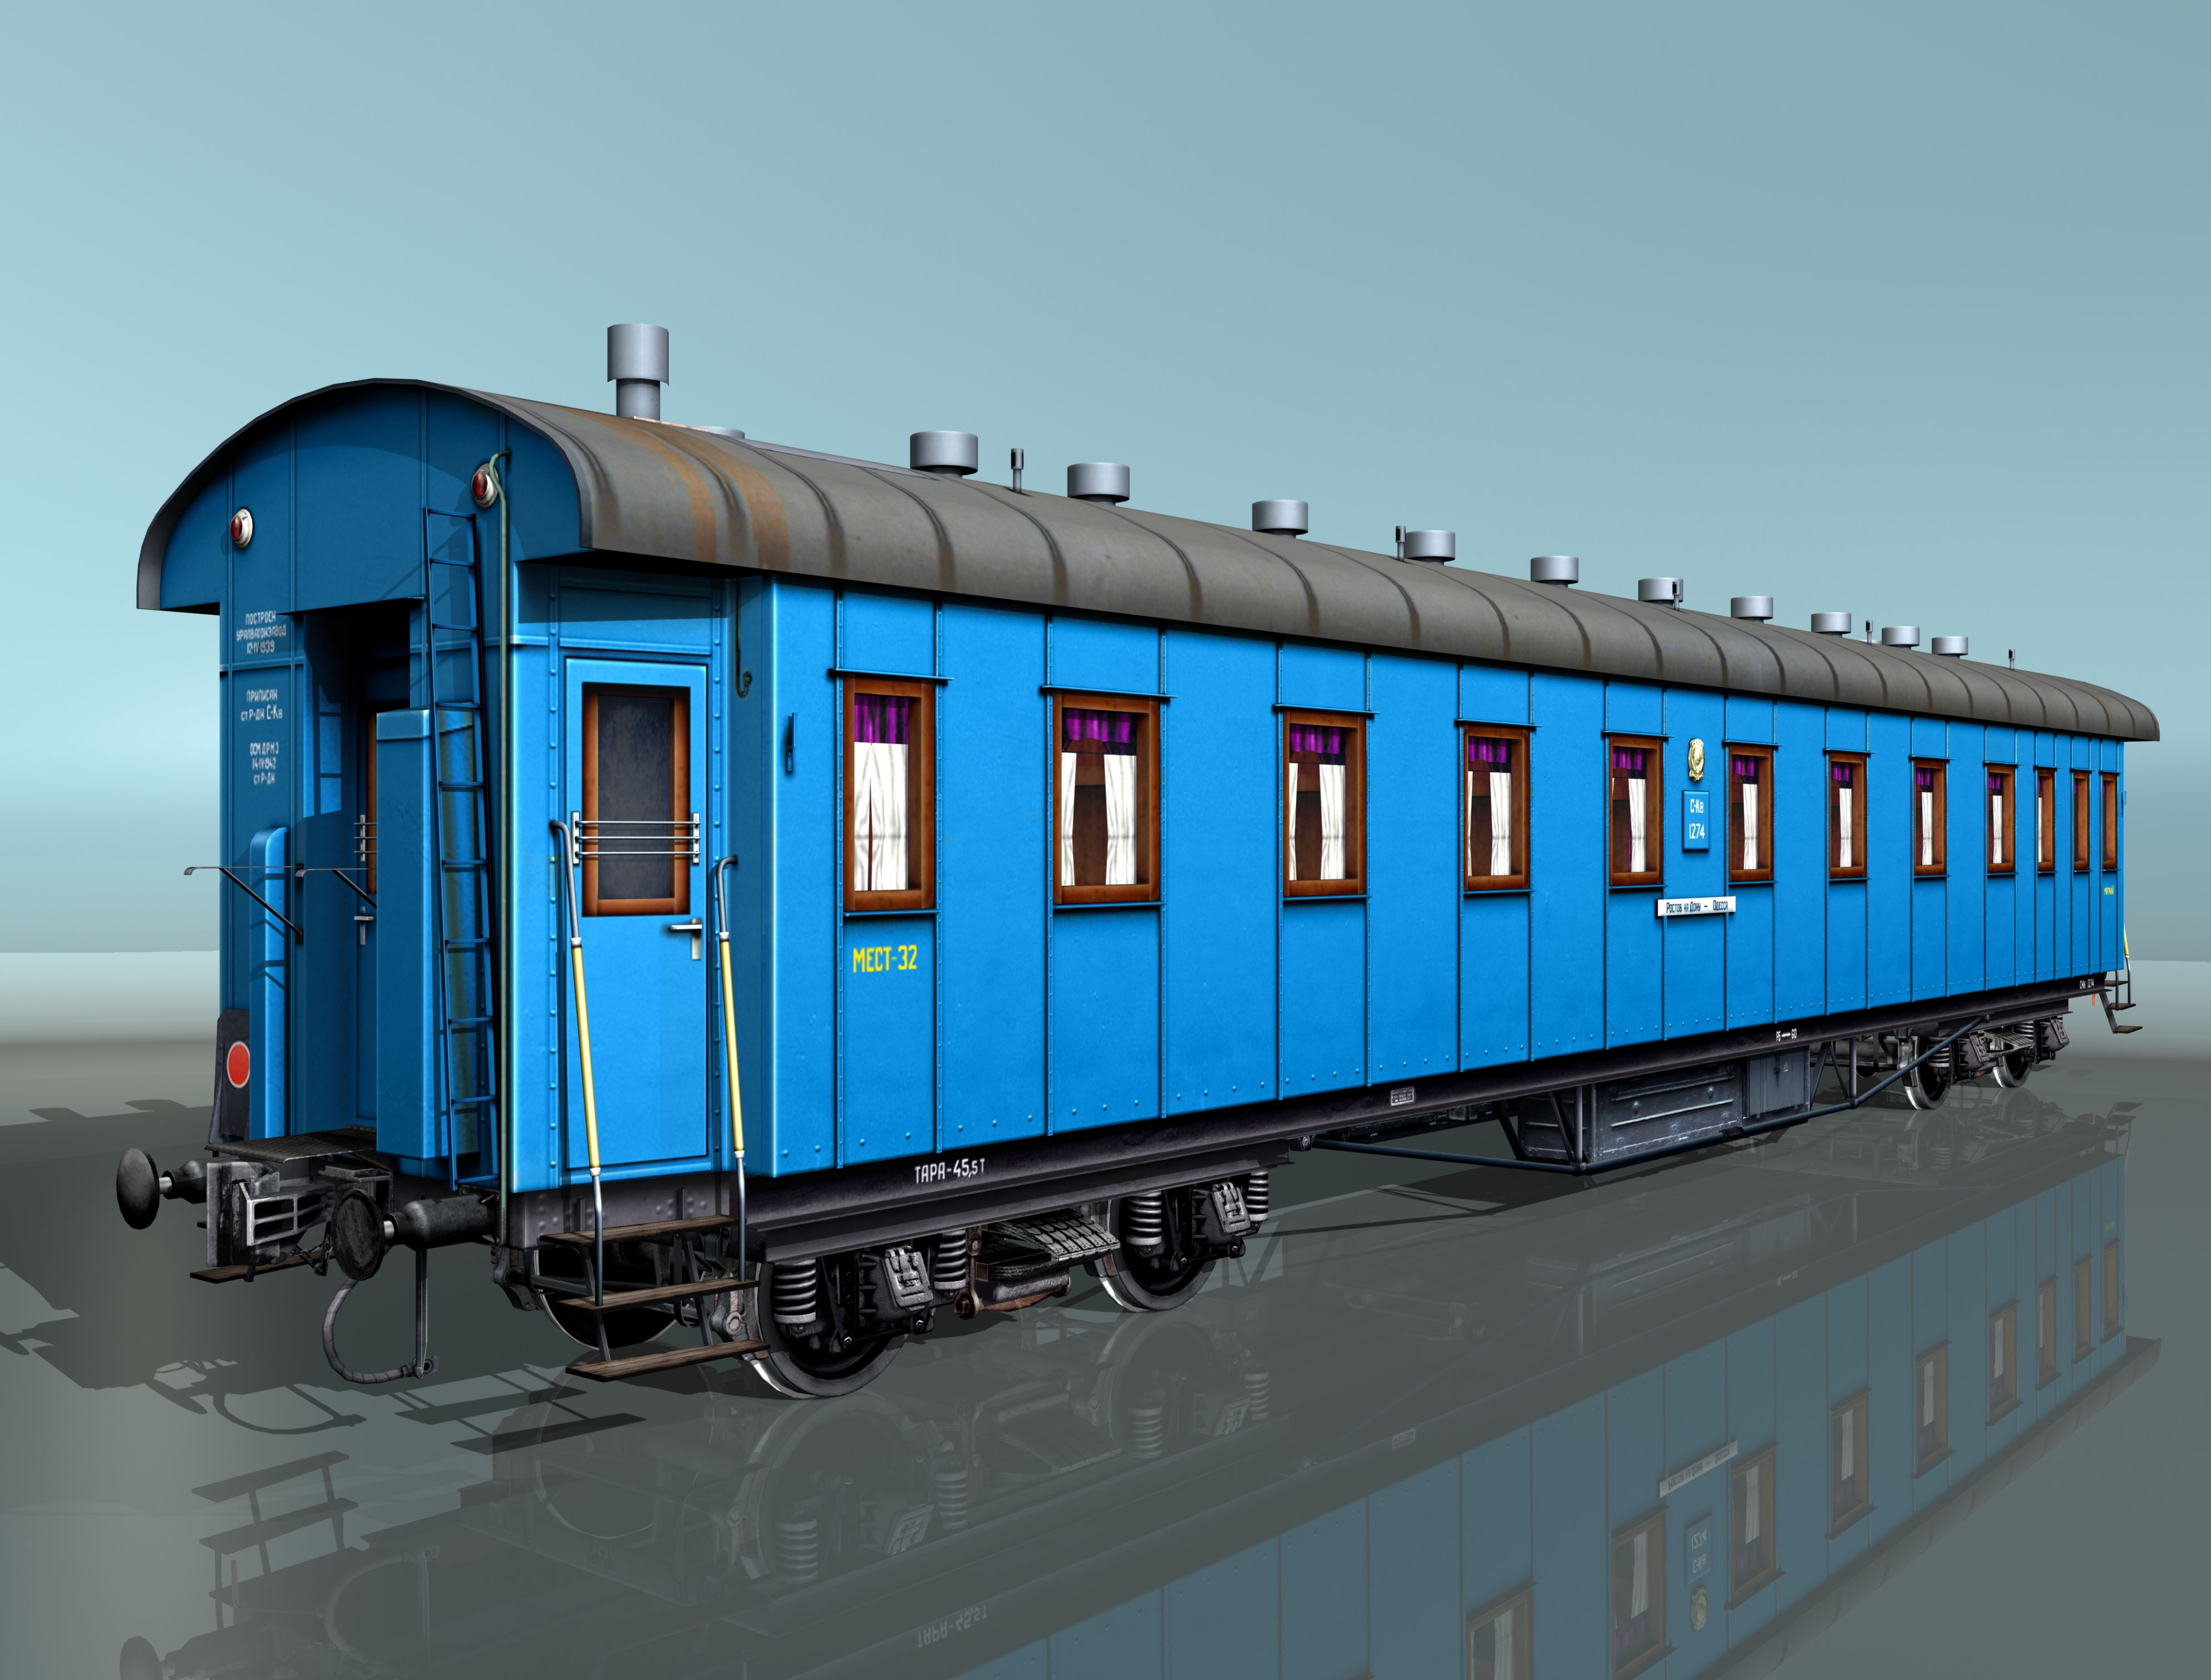 passenger-coach-1940-1950-ies-russian-railroads